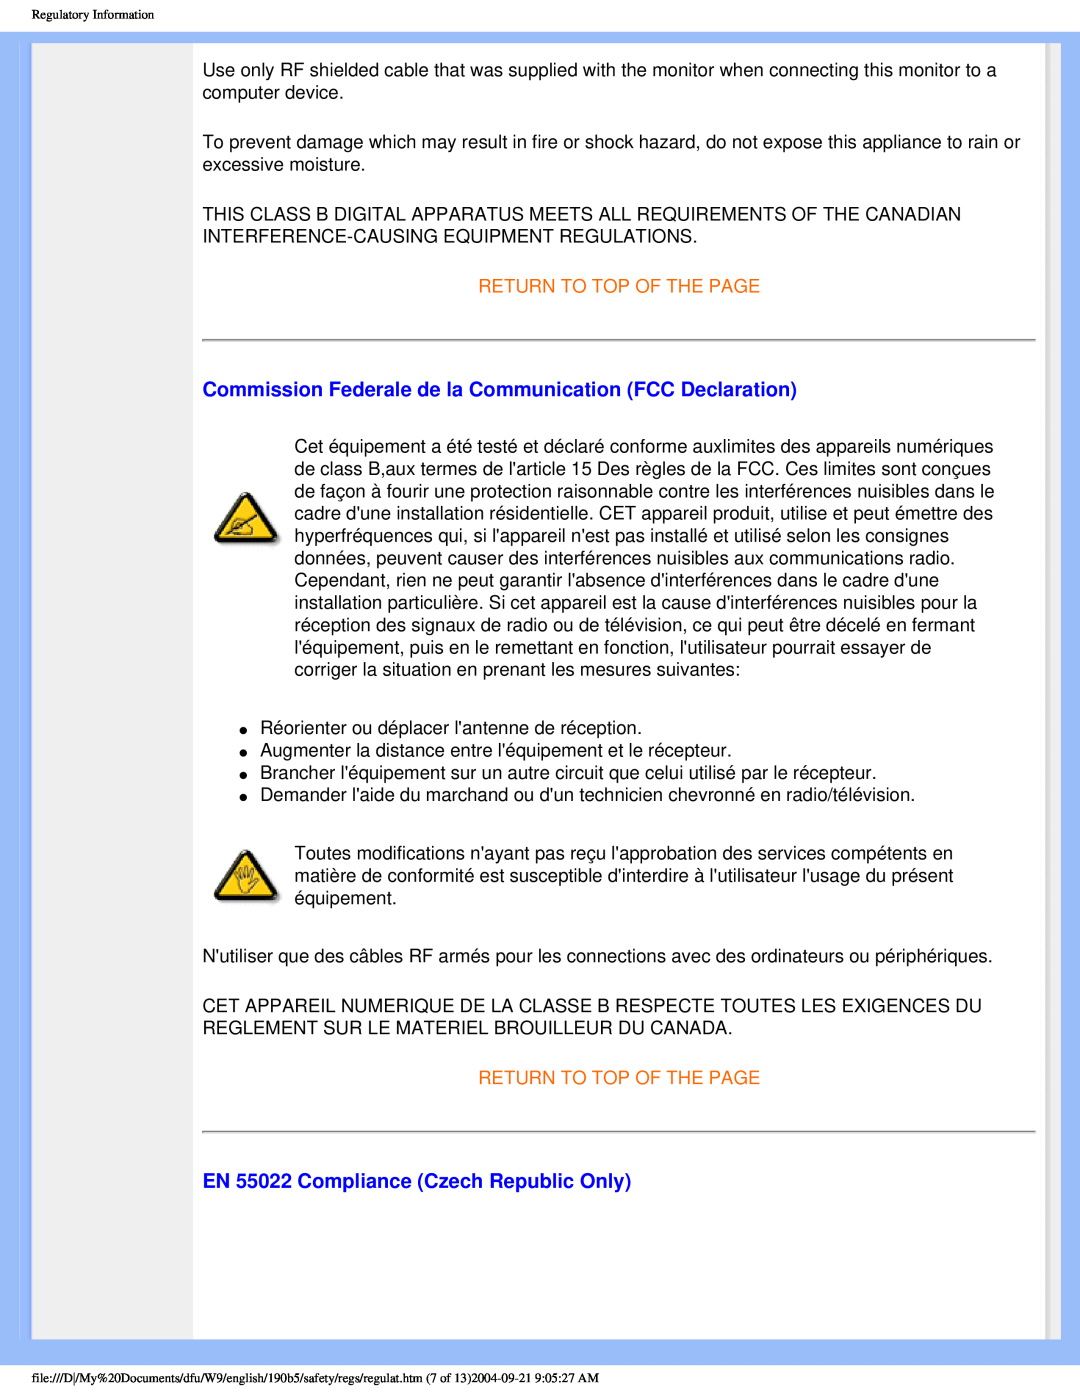 Philips 190b5 user manual Commission Federale de la Communication FCC Declaration, EN 55022 Compliance Czech Republic Only 